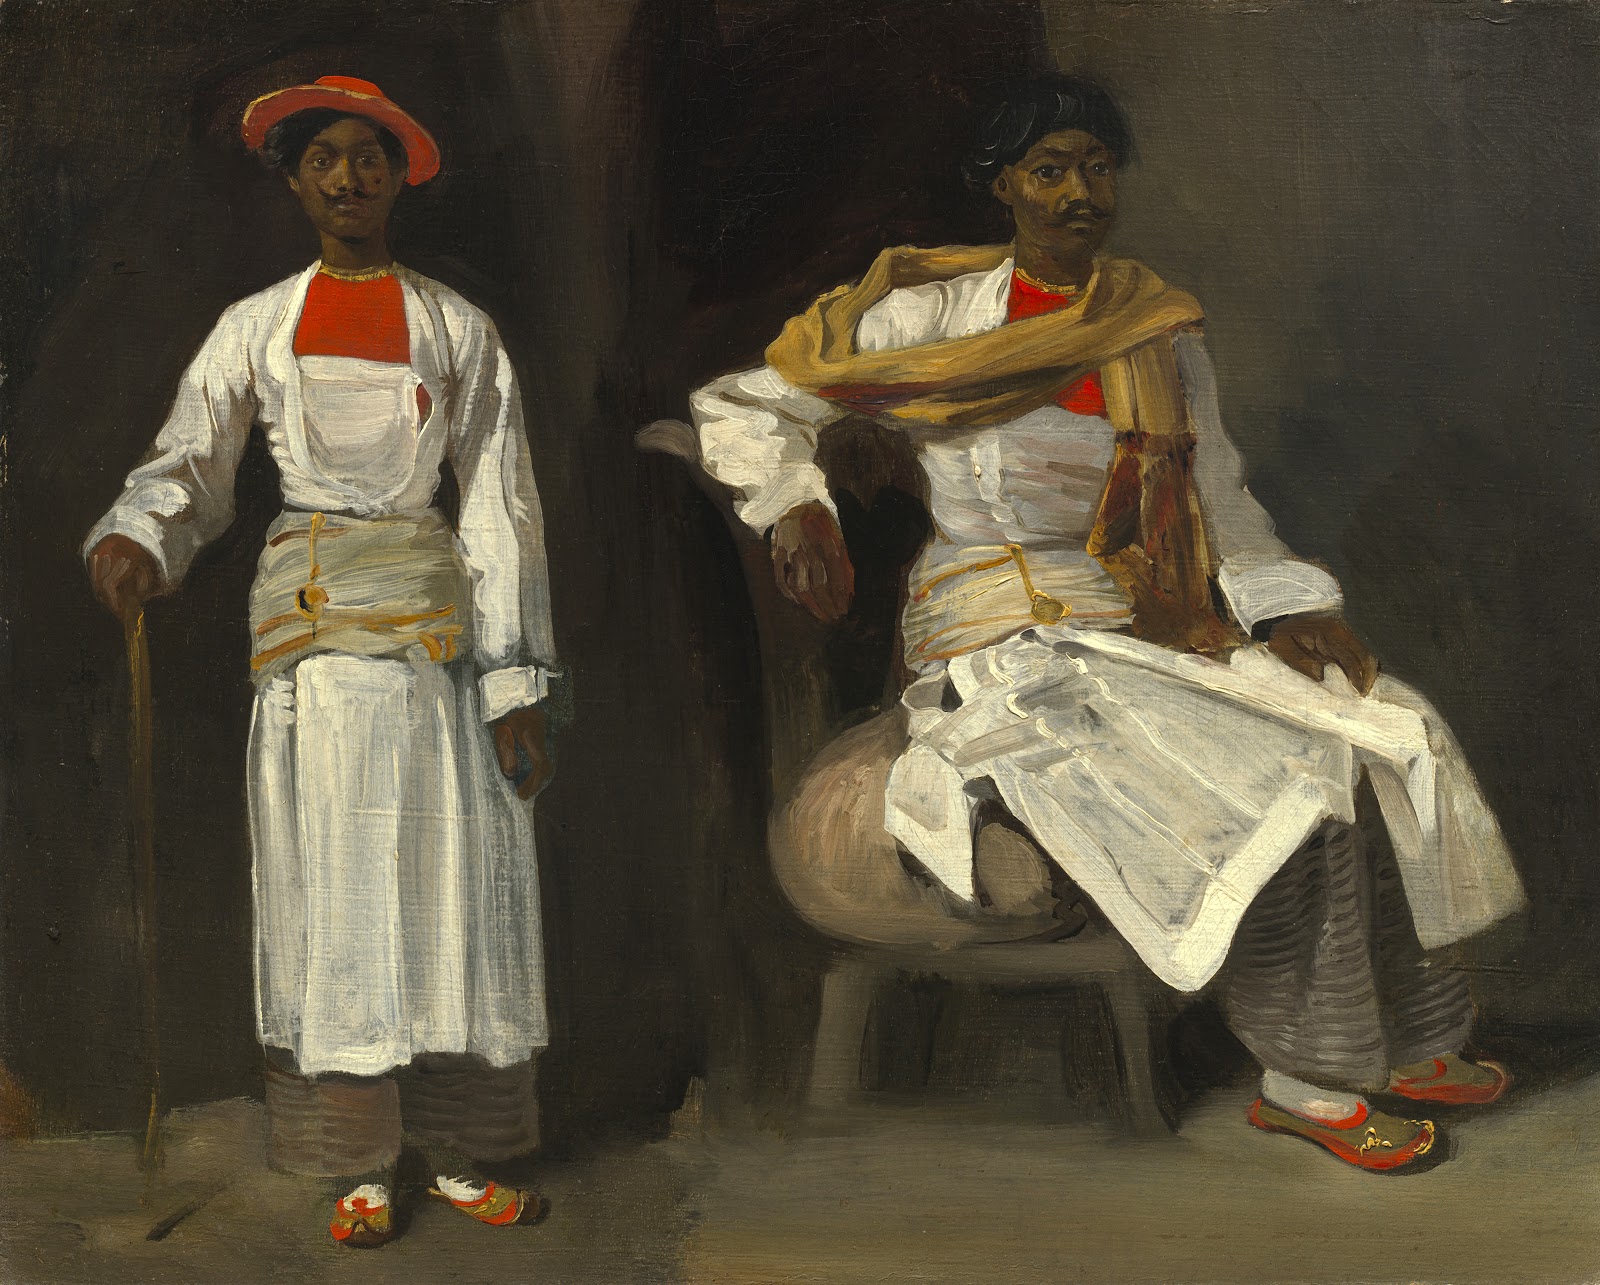 Eugene+Delacroix-1798-1863 (293).jpg